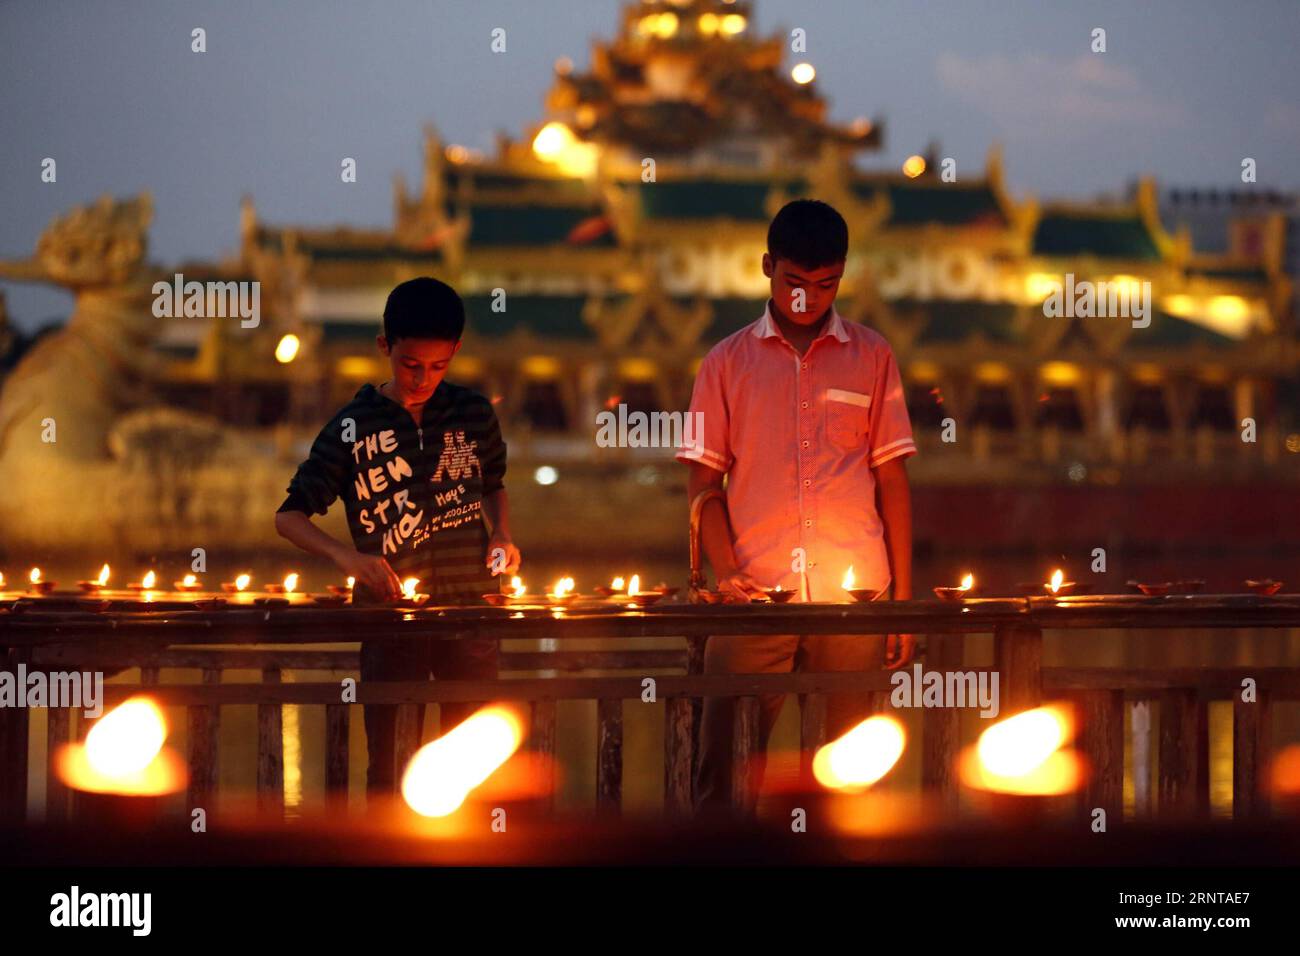 (171103) -- YANGON, 3. November 2017 -- Menschen zünden Öllampen während des Tazaungdaing-Festivals in Yangon, Myanmar, am 3. November 2017. Das Tazaungdaing-Festival findet im achten Monat des Kalenderjahres Myanmars statt, um das Ende der Regenzeit zu markieren. ) MYANMAR-YANGON-TAZAUNGDAING FESTIVAL UxAung PUBLICATIONxNOTxINxCHN Stockfoto